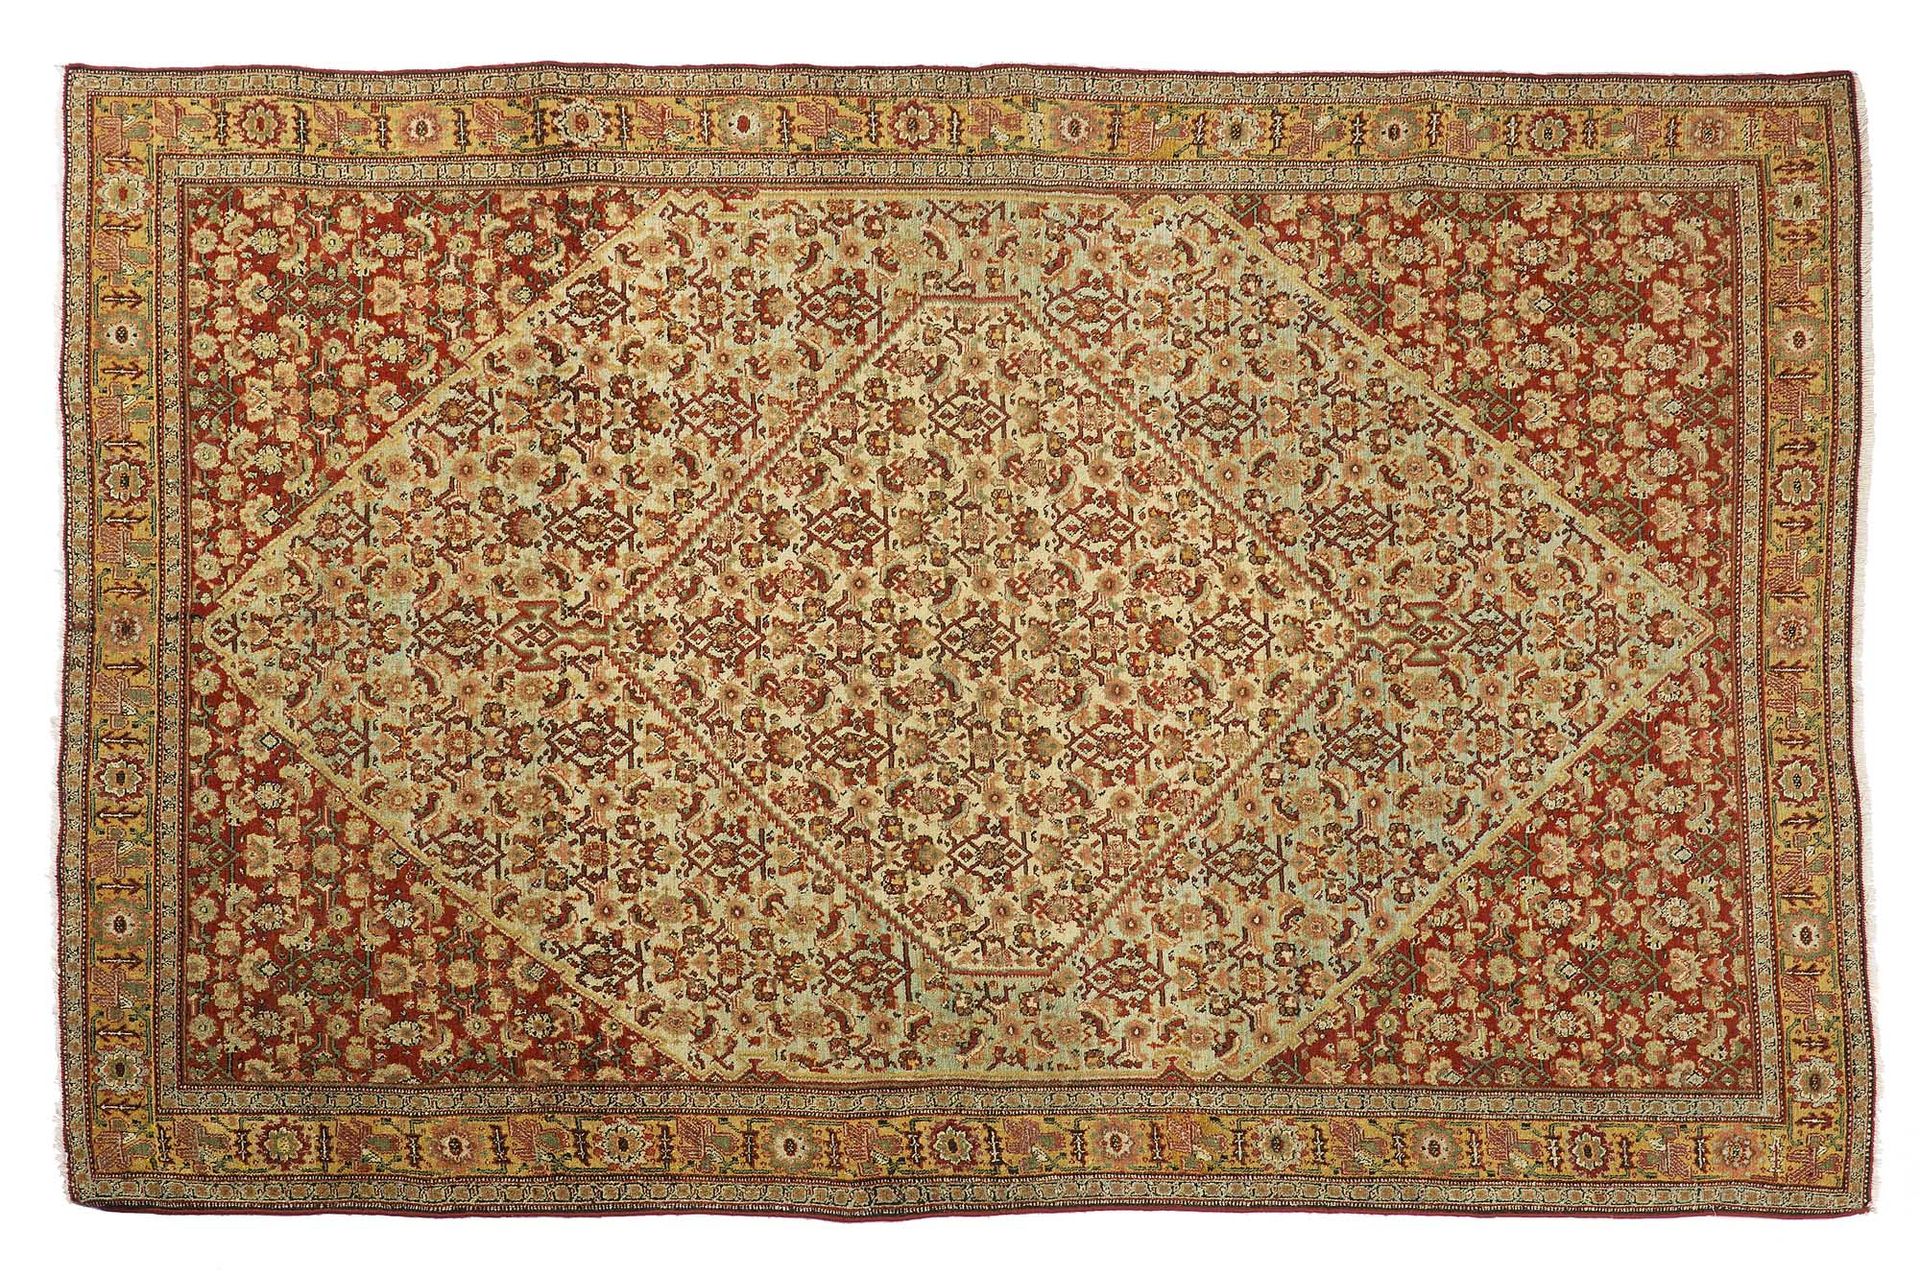 Null Bel tappeto SENNEH (Persia), fine del 19° secolo

Dimensioni: 196 x 128cm

&hellip;